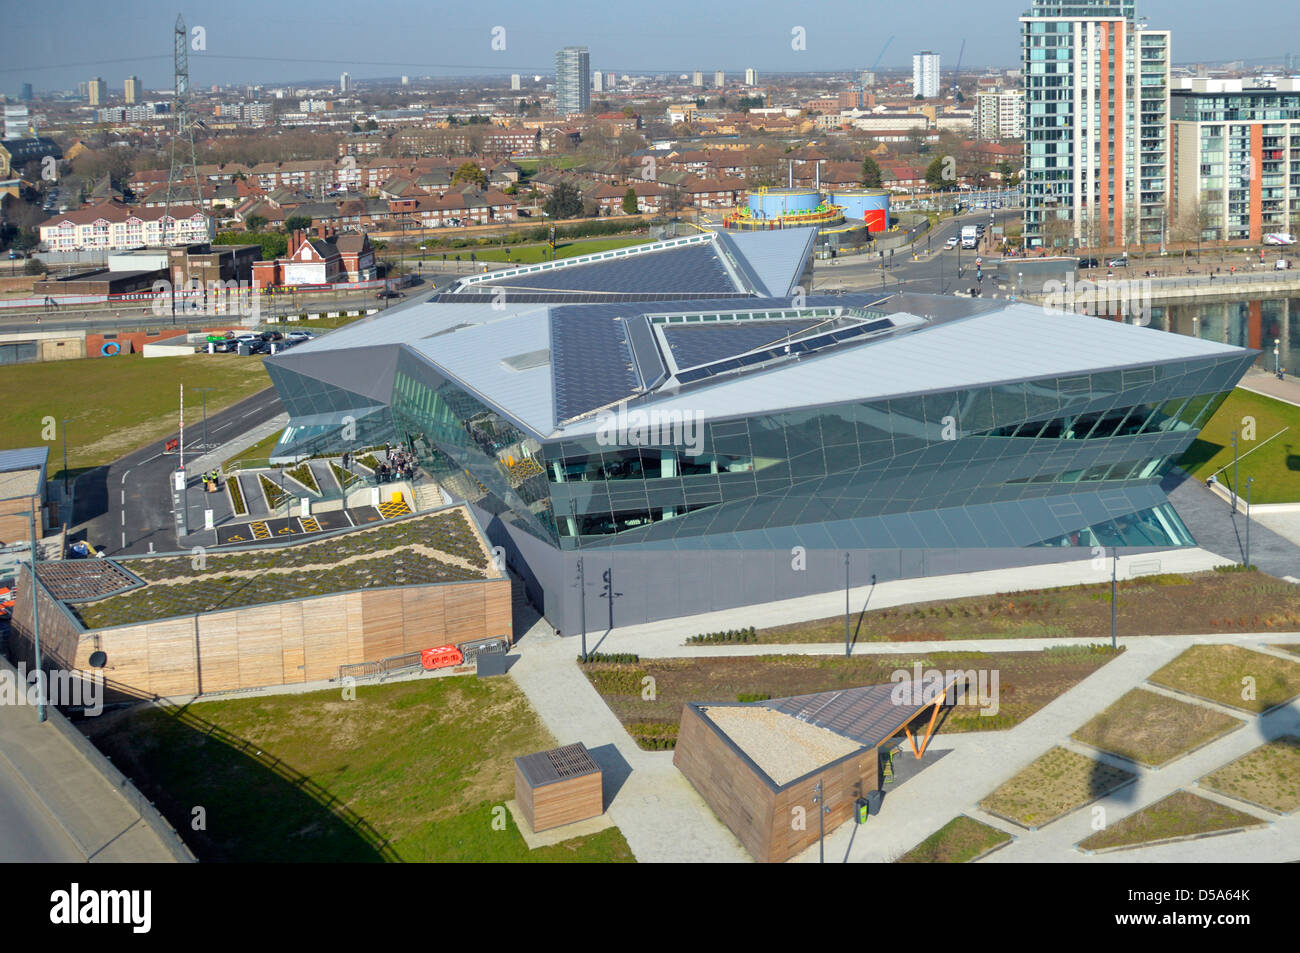 Vue aérienne Bâtiment Crystal Modern avec expositions et expositions éducatives Sur le développement durable de la ville par Siemens business dans l'est de Londres Angleterre Royaume-Uni Banque D'Images